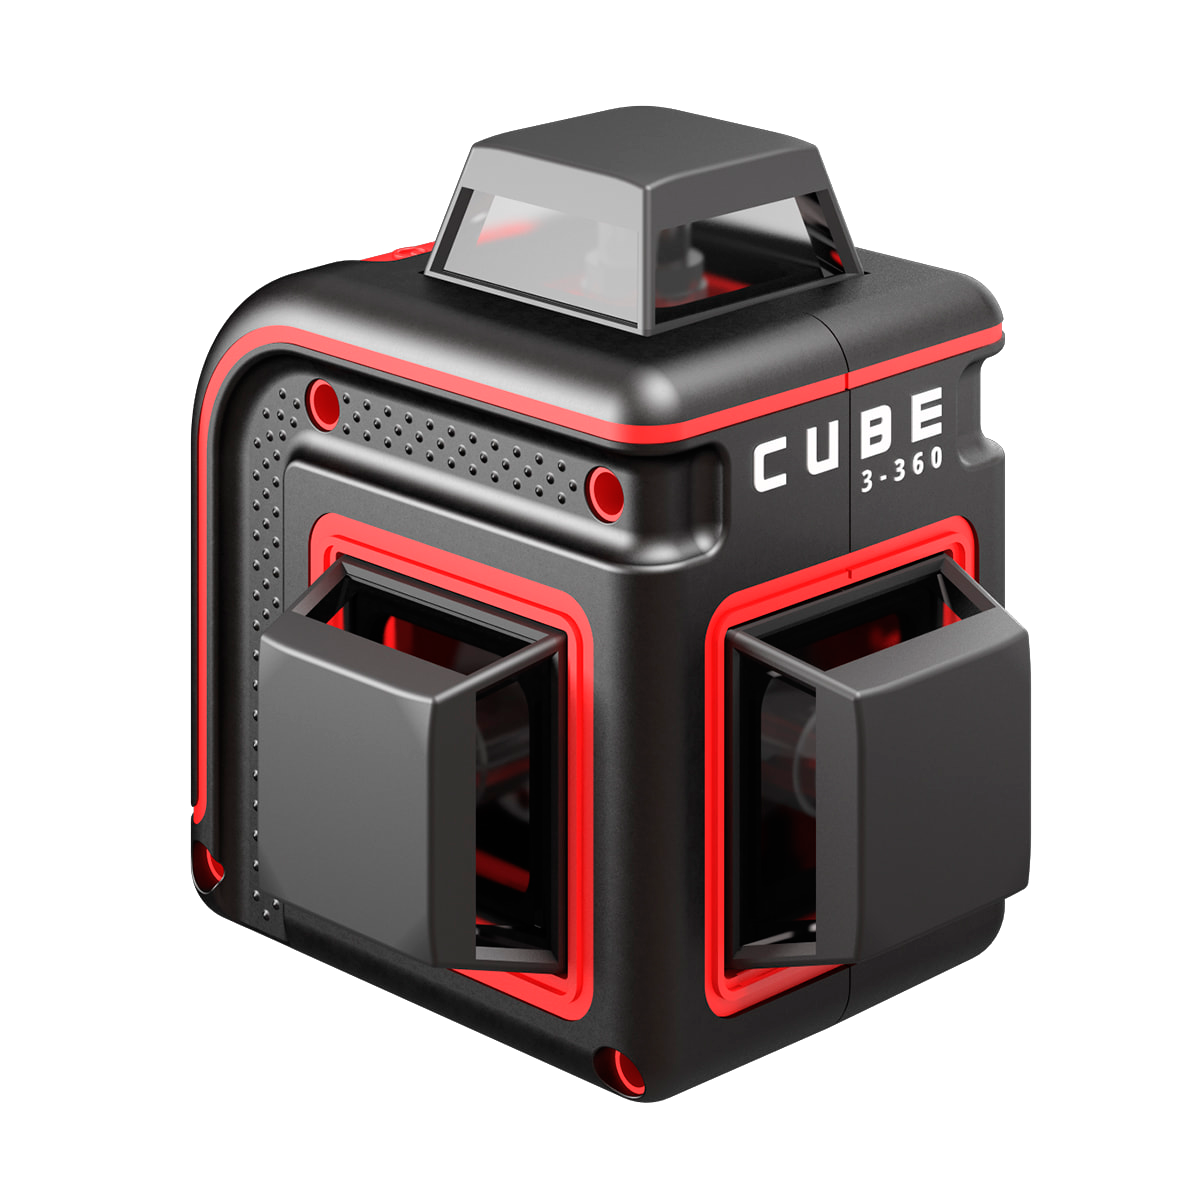 Лазерный уровень ada Cube 3-360 Home Edition а00565. Нивелир лазерный ada Cube 360 professional Edition. Лазерный уровень ada Cube 360 Basic Edition. Лазерный уровень ada Cube 3-360 Green Basic Edition. Купить строительный лазерный уровень